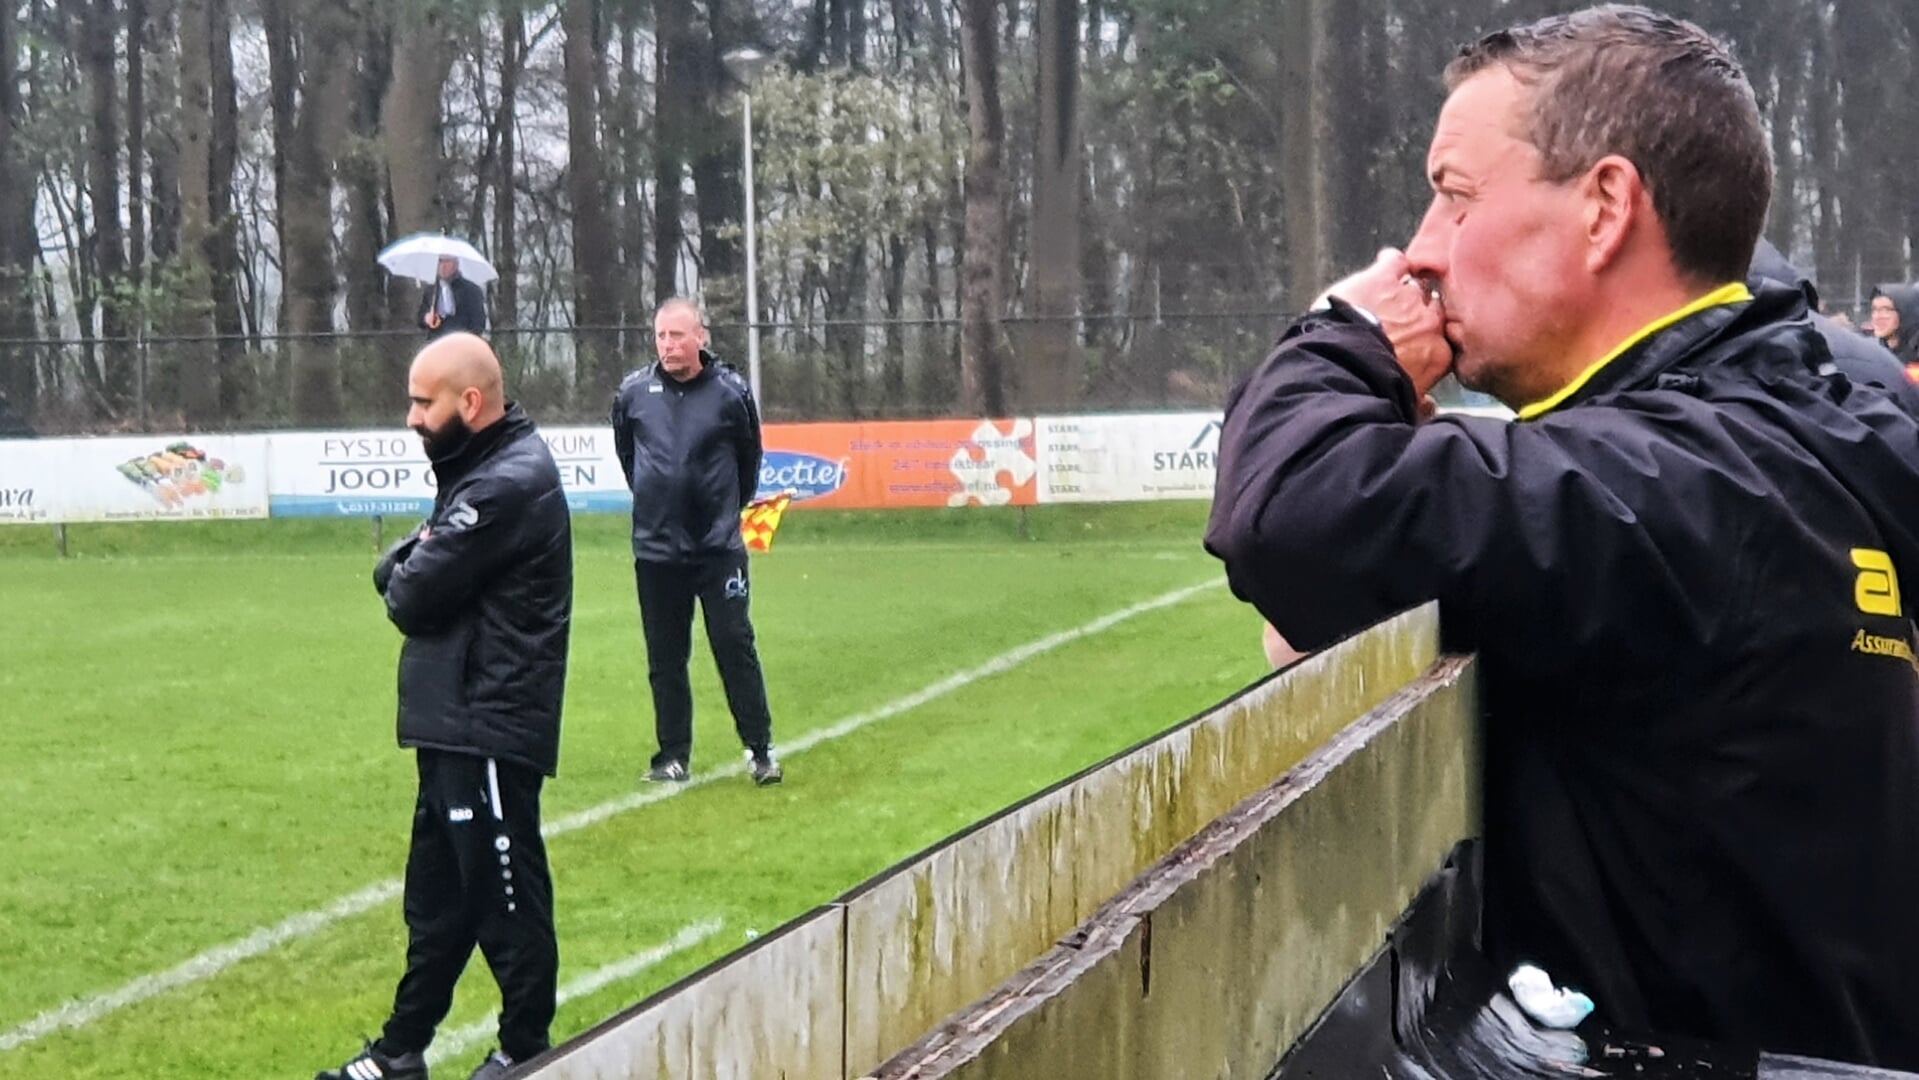 Redichem-trainer Maarten Kerkhof (voorgrond) wordt komend seizoen de hoofdtrainer bij de Renkumse fusieclub SCW'23. Zijn CHRC-collega Khaiber Intezar (links) gaat komend seizoen aan de slag als hoofdtrainer bij Ede/Victoria.